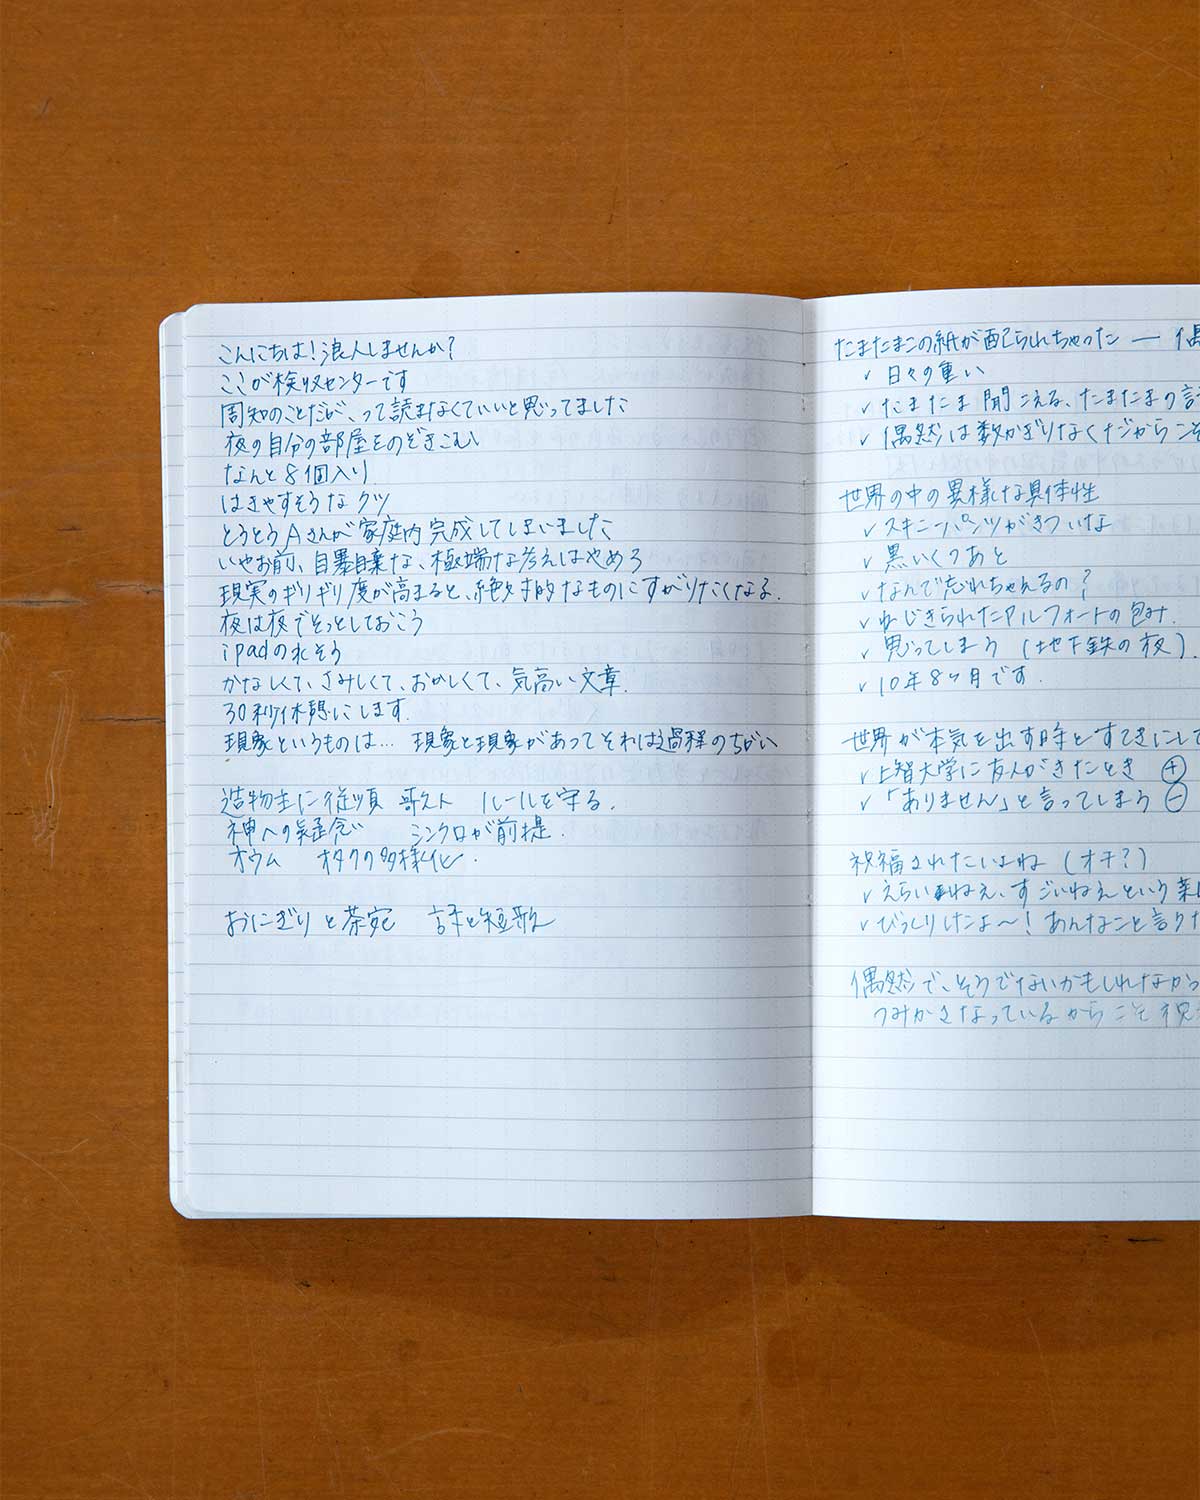 哲学研究者・永井玲衣が印象的だった言葉や考えをメモした紙のノート